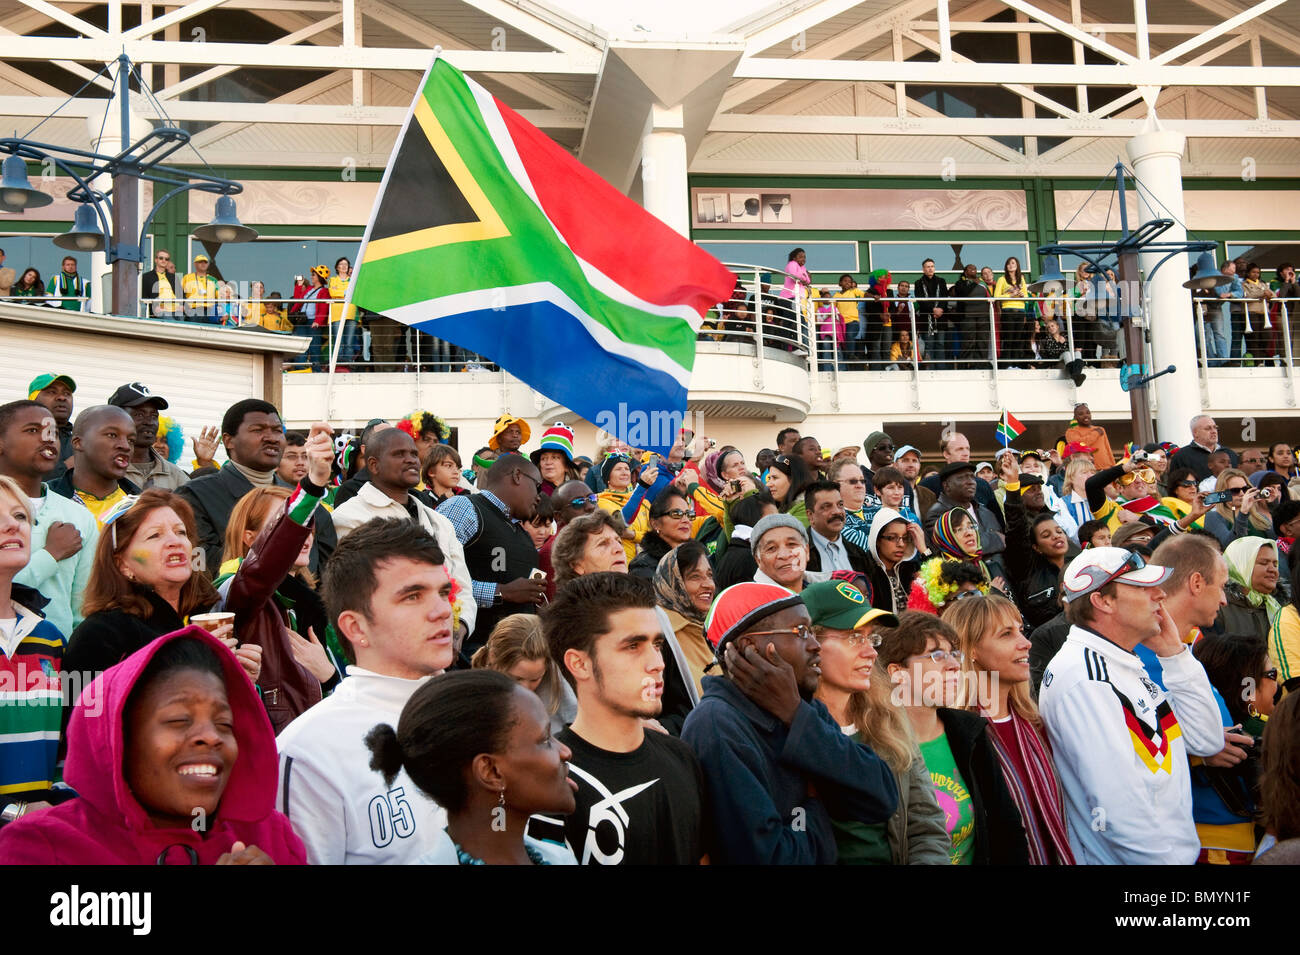 Public Viewing der FIFA-WM 2010 im V & A Waterfront in Kapstadt Südafrika Stockfoto